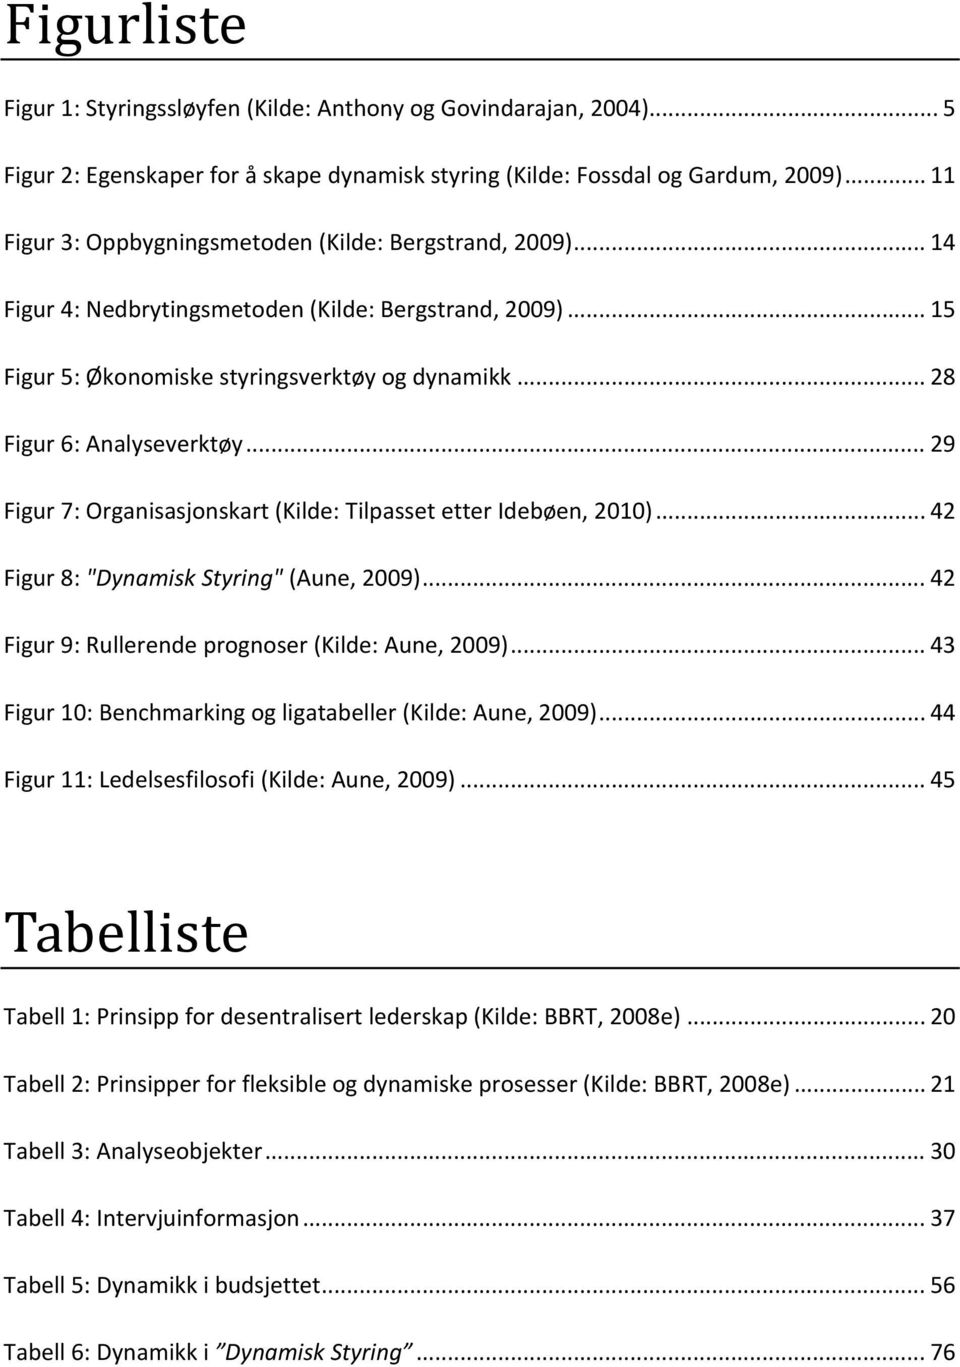 .. 28 Figur 6: Analyseverktøy... 29 Figur 7: Organisasjonskart (Kilde: Tilpasset etter Idebøen, 2010)... 42 Figur 8: "Dynamisk Styring" (Aune, 2009).